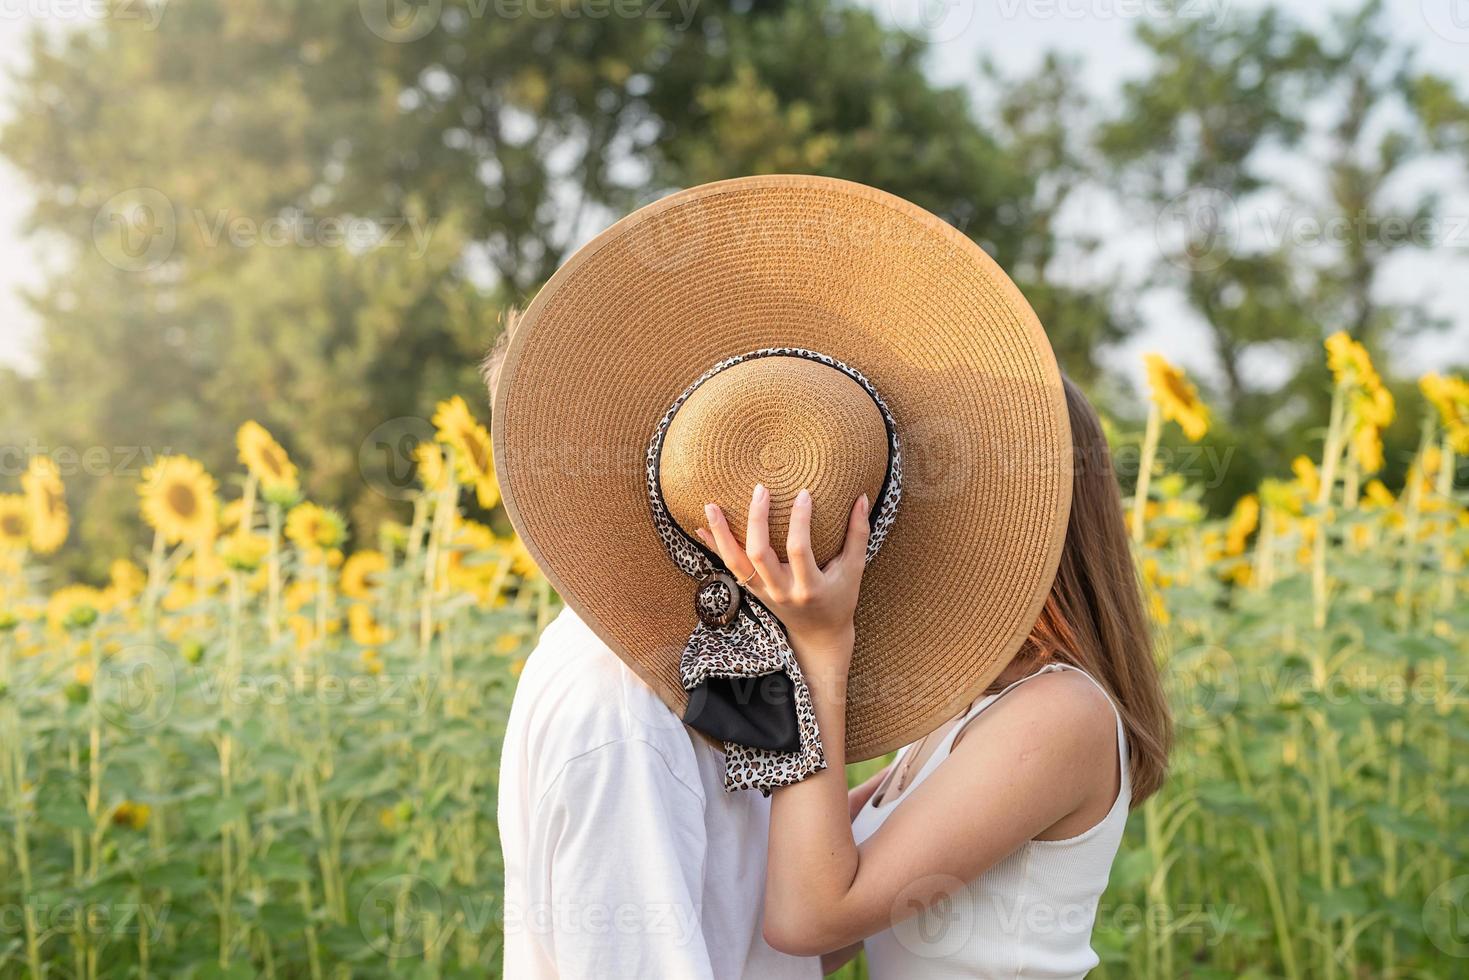 jeune couple heureux s'embrassant sur une couverture de pique-nique, se couvrant le visage avec un chapeau d'été photo